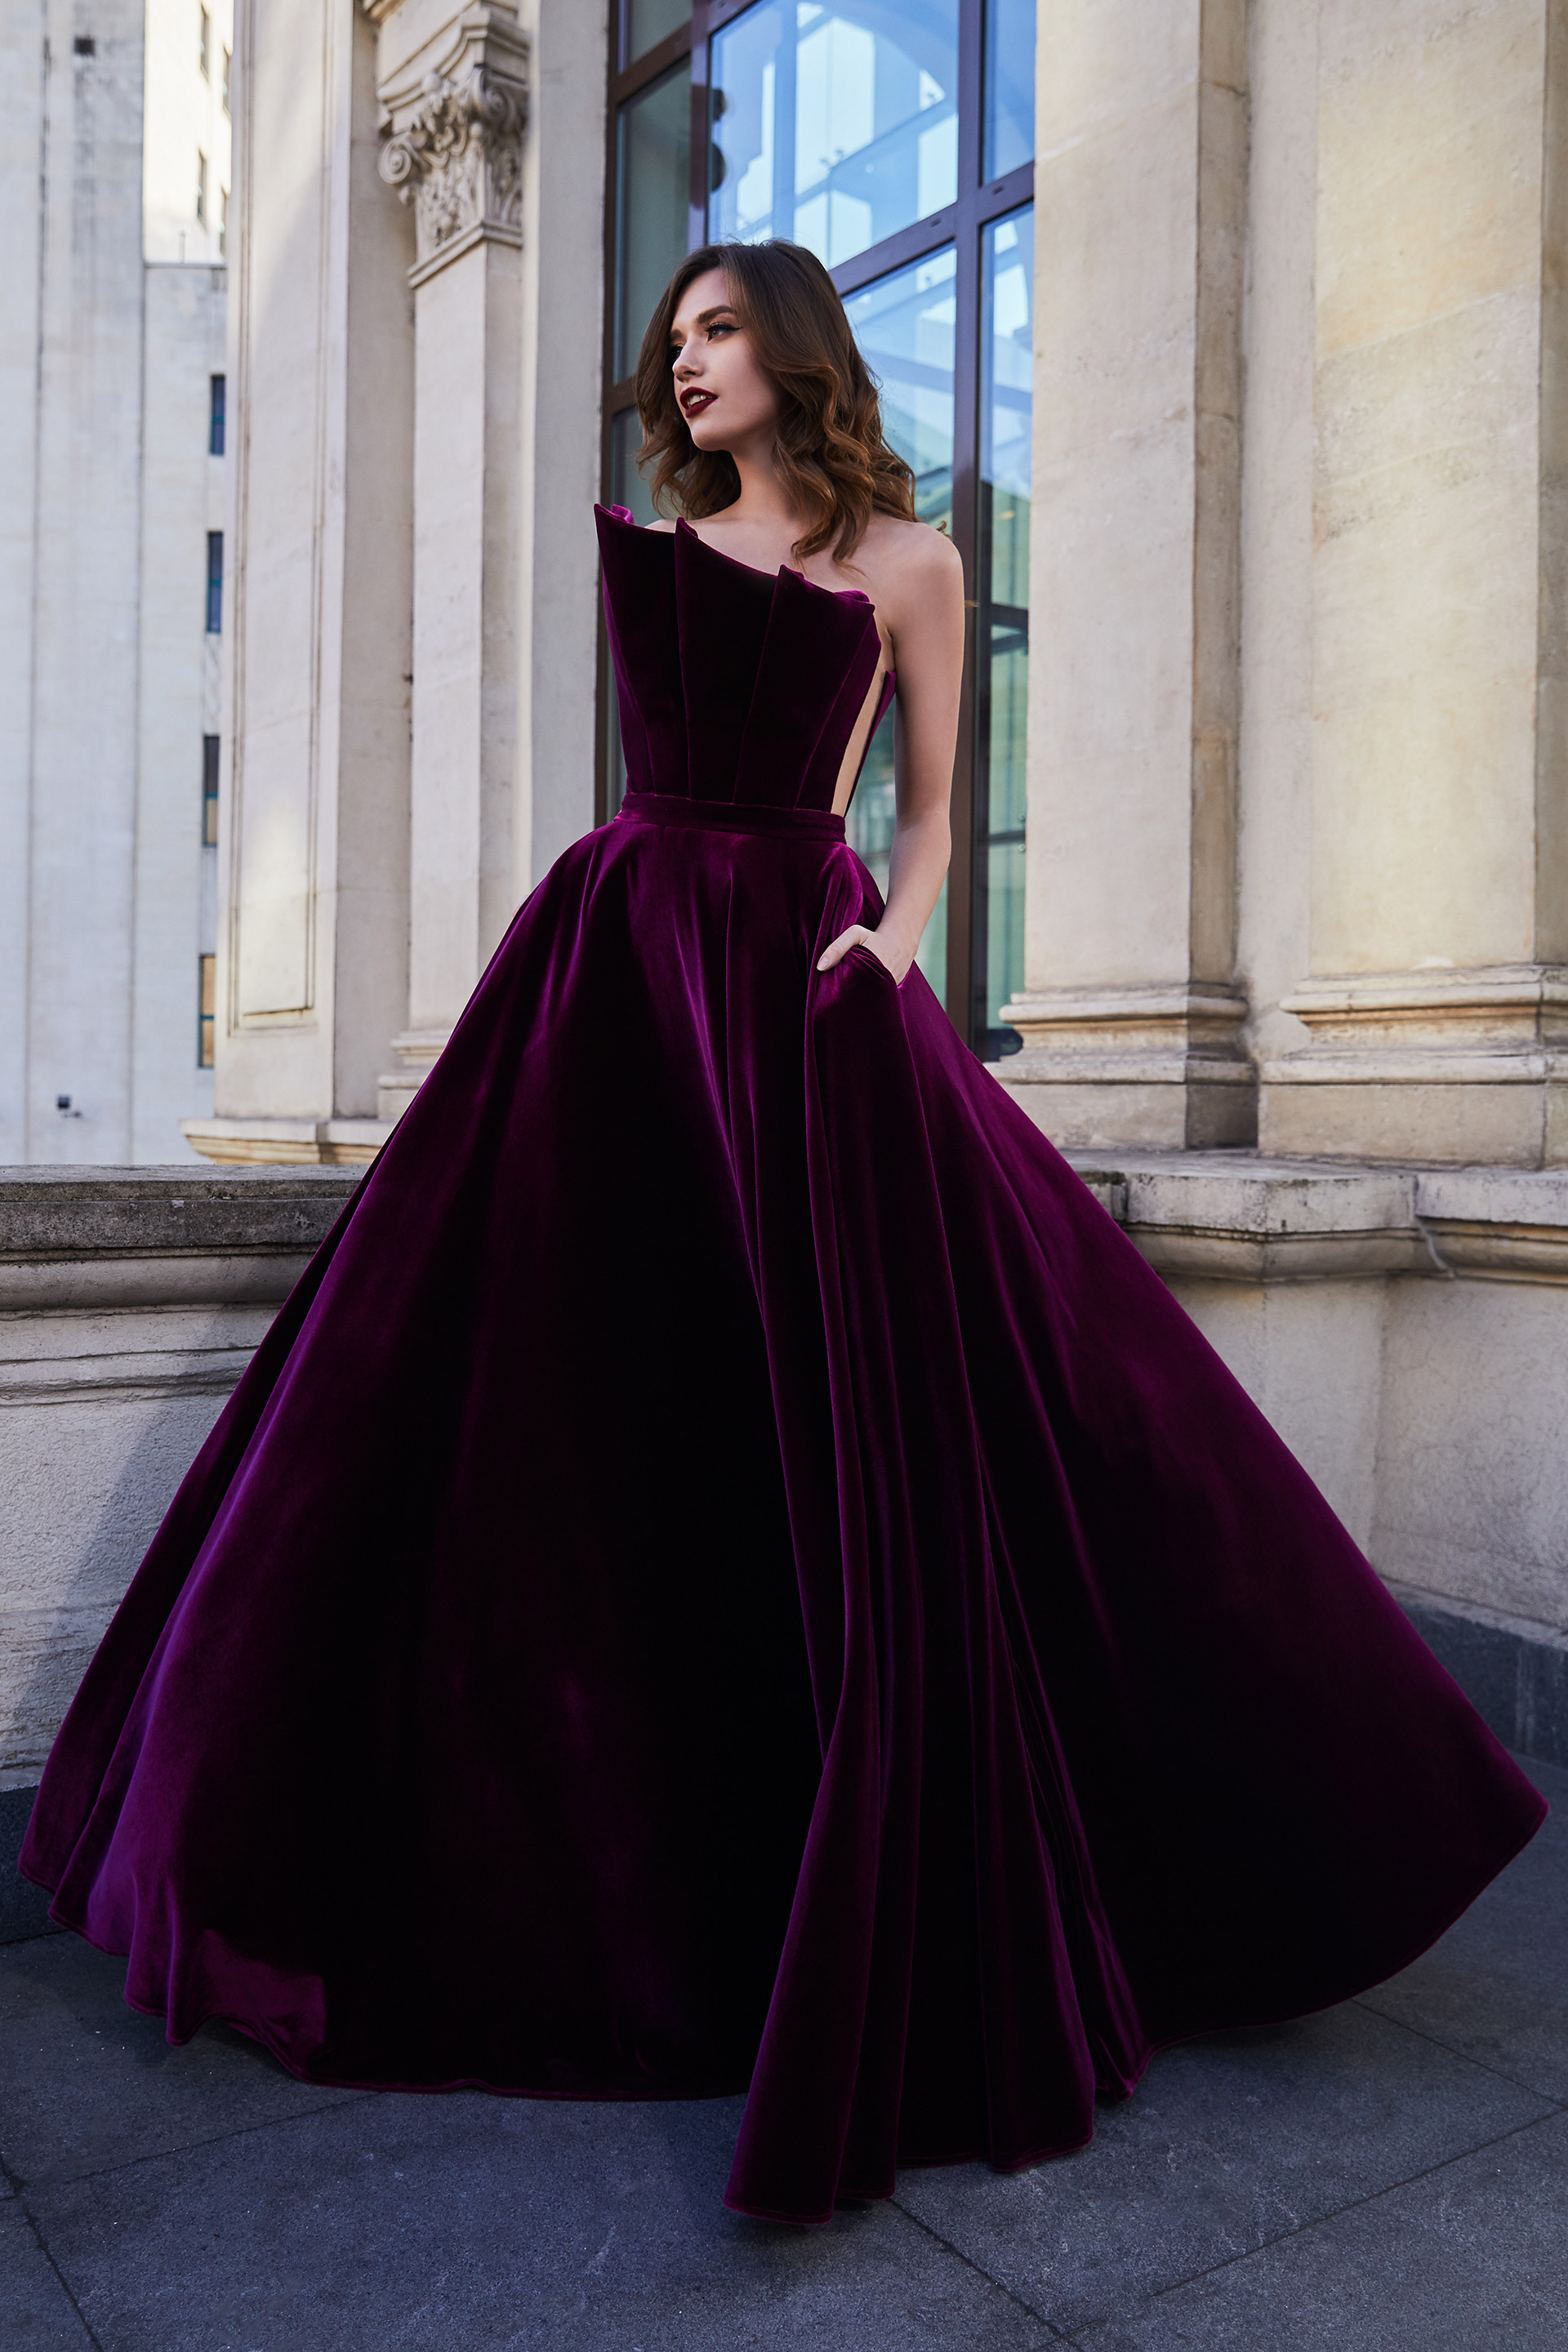 Velvet Ball Gowns | vlr.eng.br